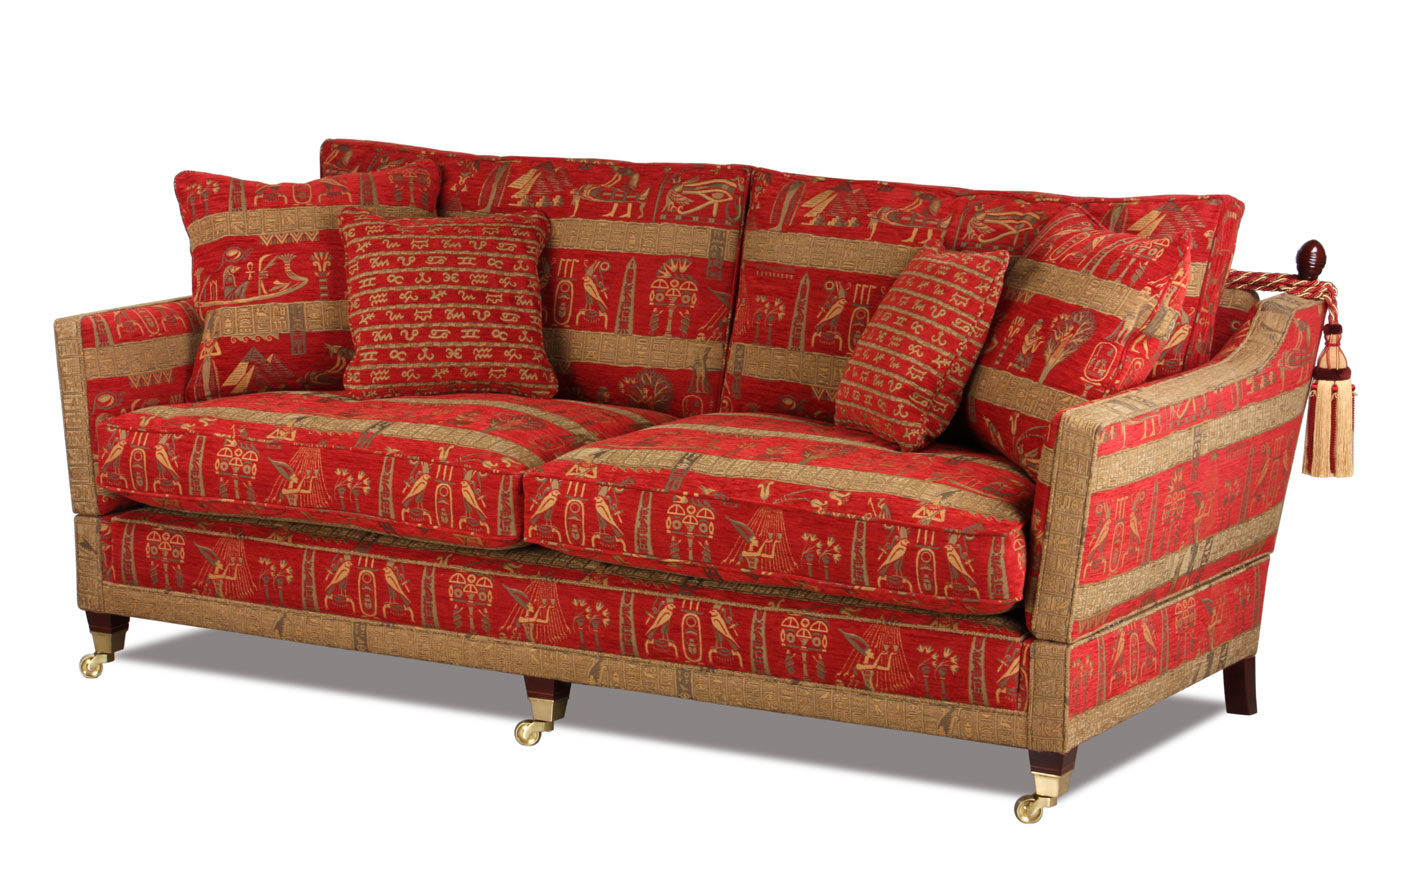 Bild vom klassischen Sofa Knole aus England